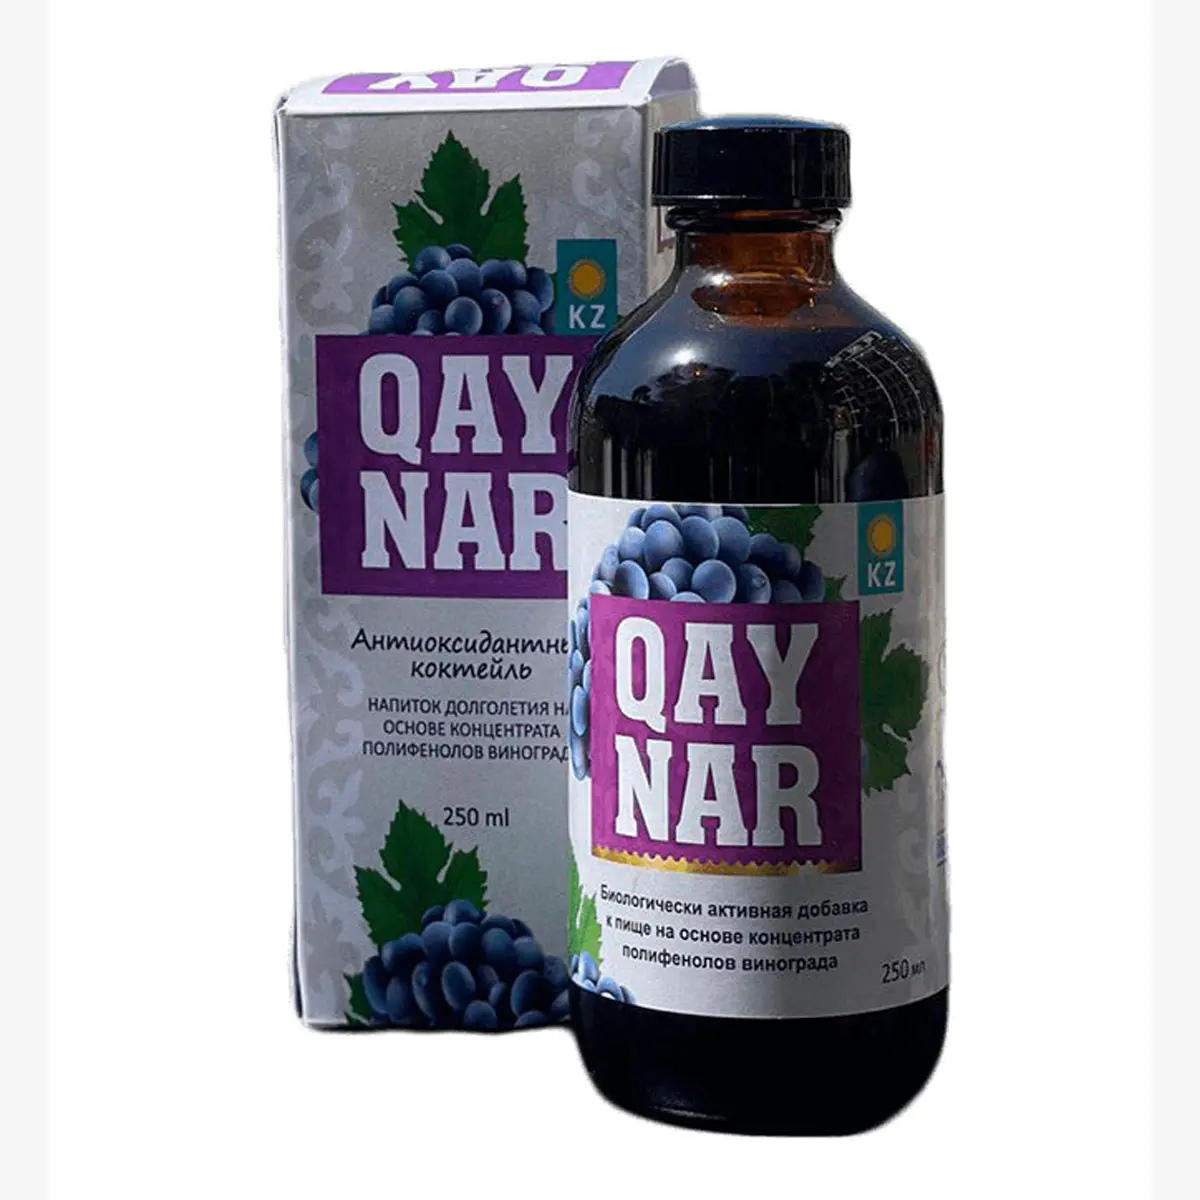 Trauben kernex trakt Polyp henol "QAYNAR" bio aktives Nahrungs ergänzungs mittel senkt die Auswirkungen des Alterns, Trauben kern polyp henol